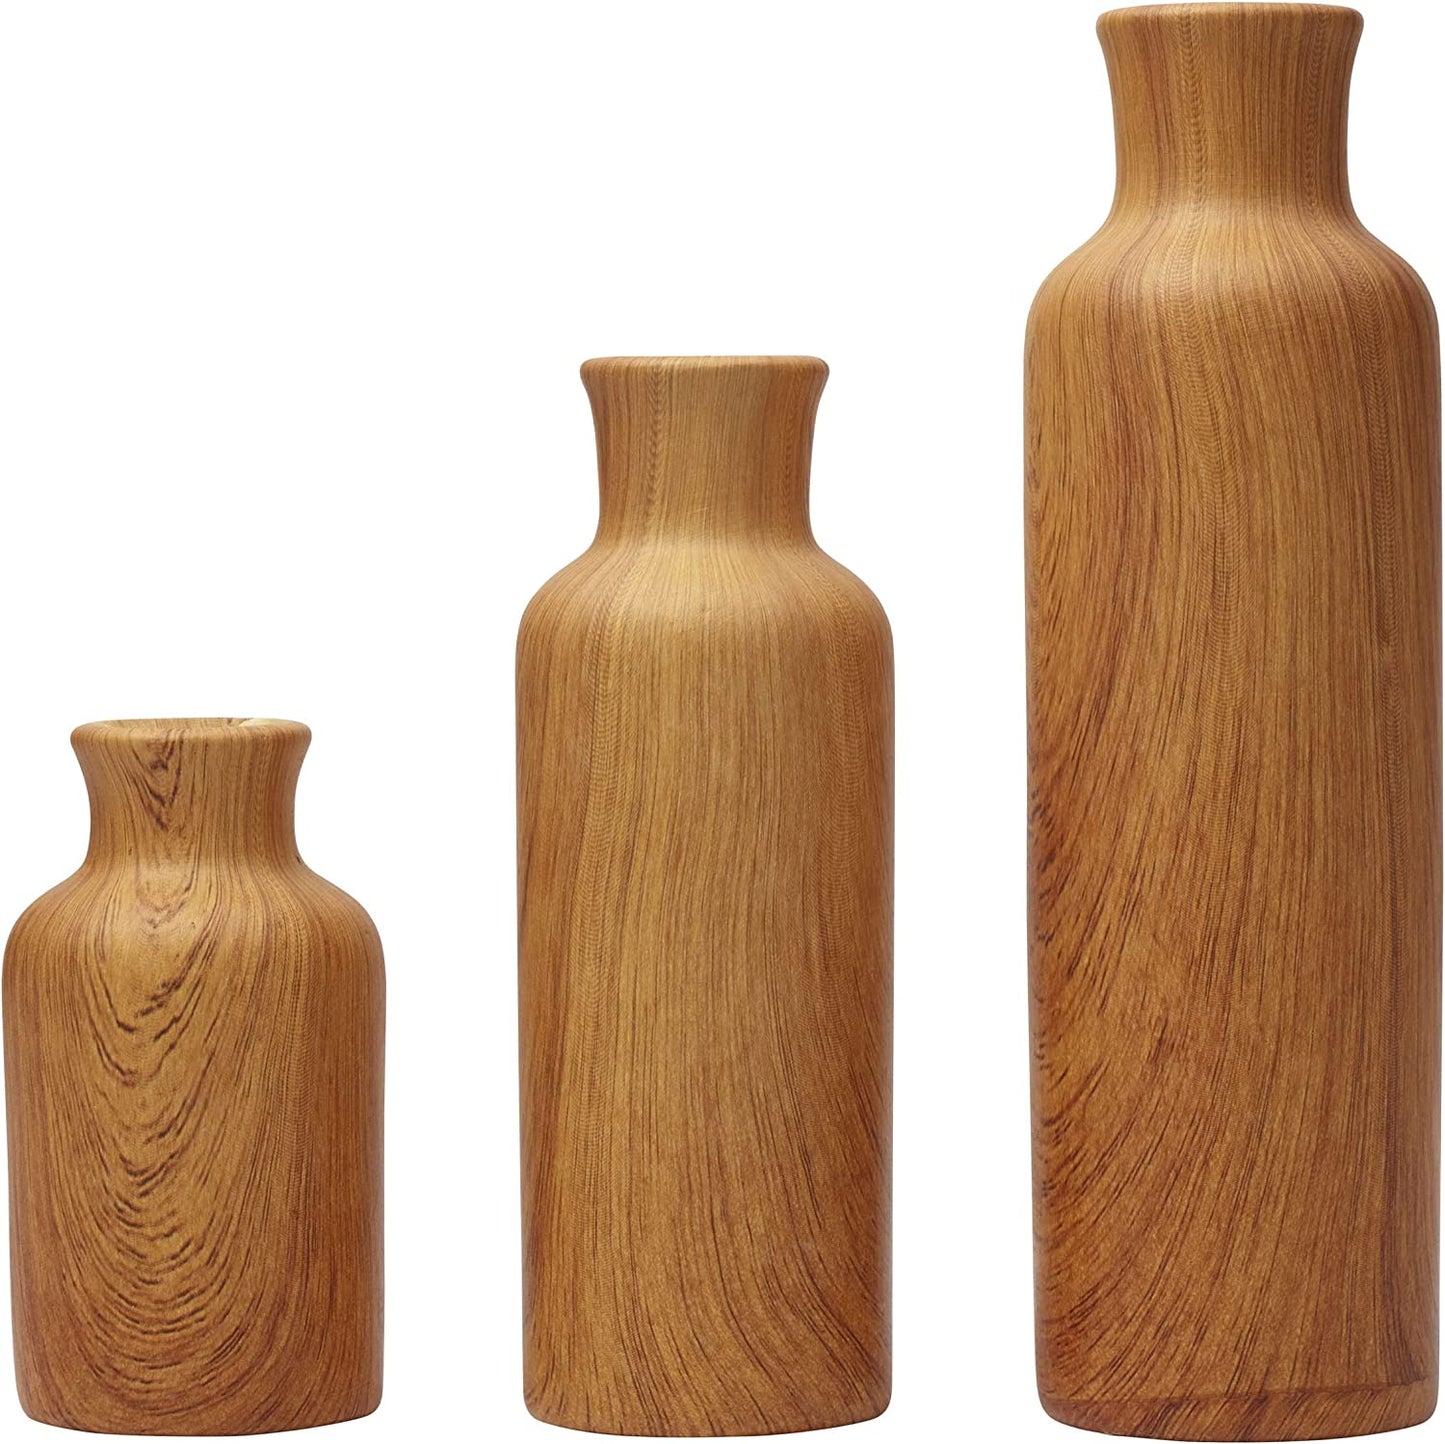 Ceramic Milk Jug Shoulder Vases, Set of 3, Natural WoodJ - Home Decor Gifts and More